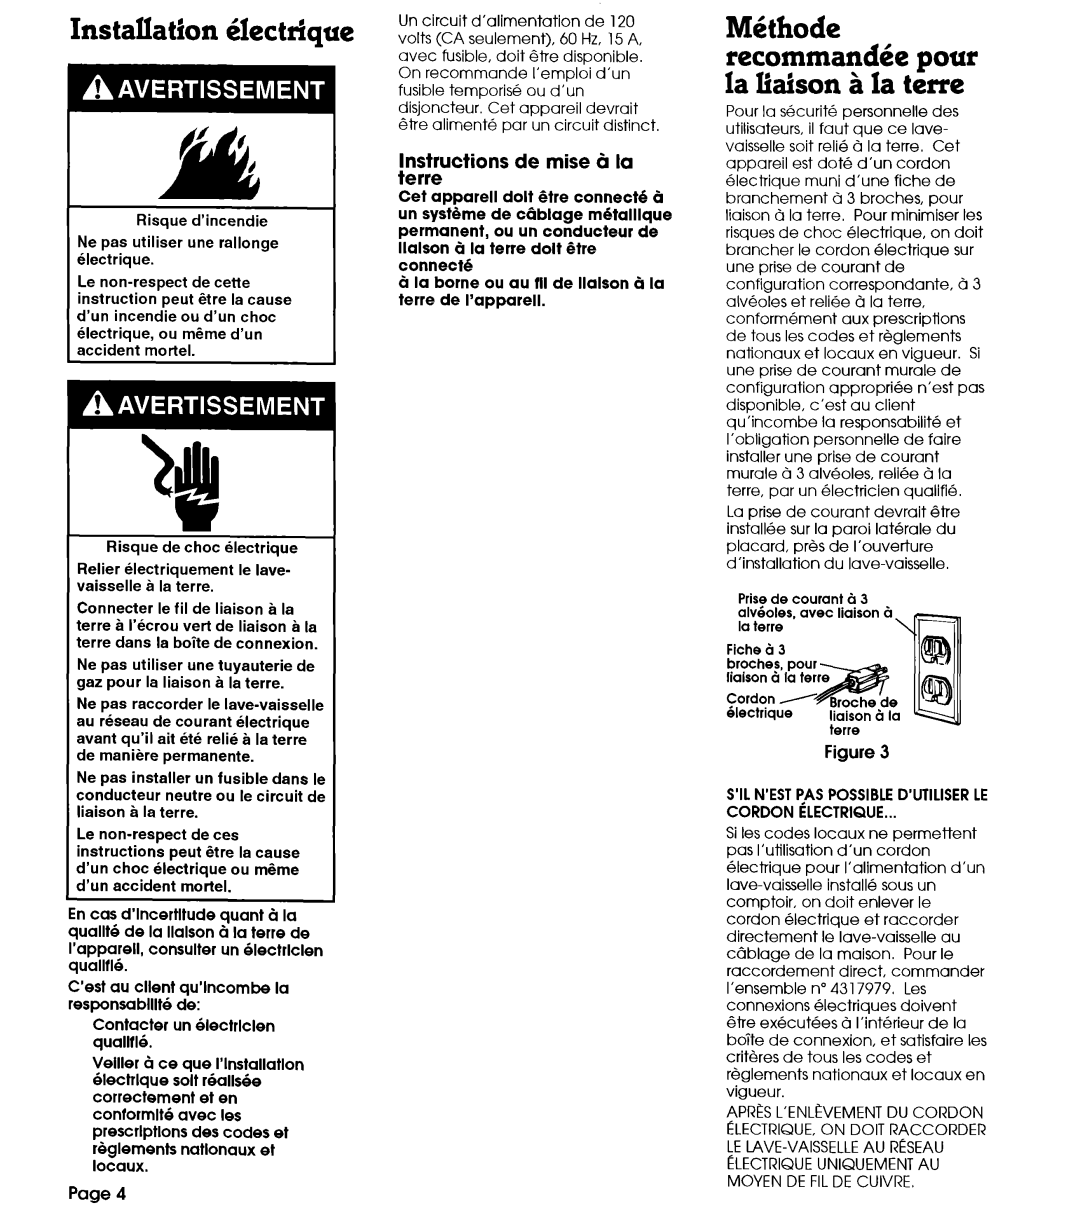 Whirlpool 801 installation instructions M&ode recommandke pour la liaison B la terre, Instructions de mise B la terre 